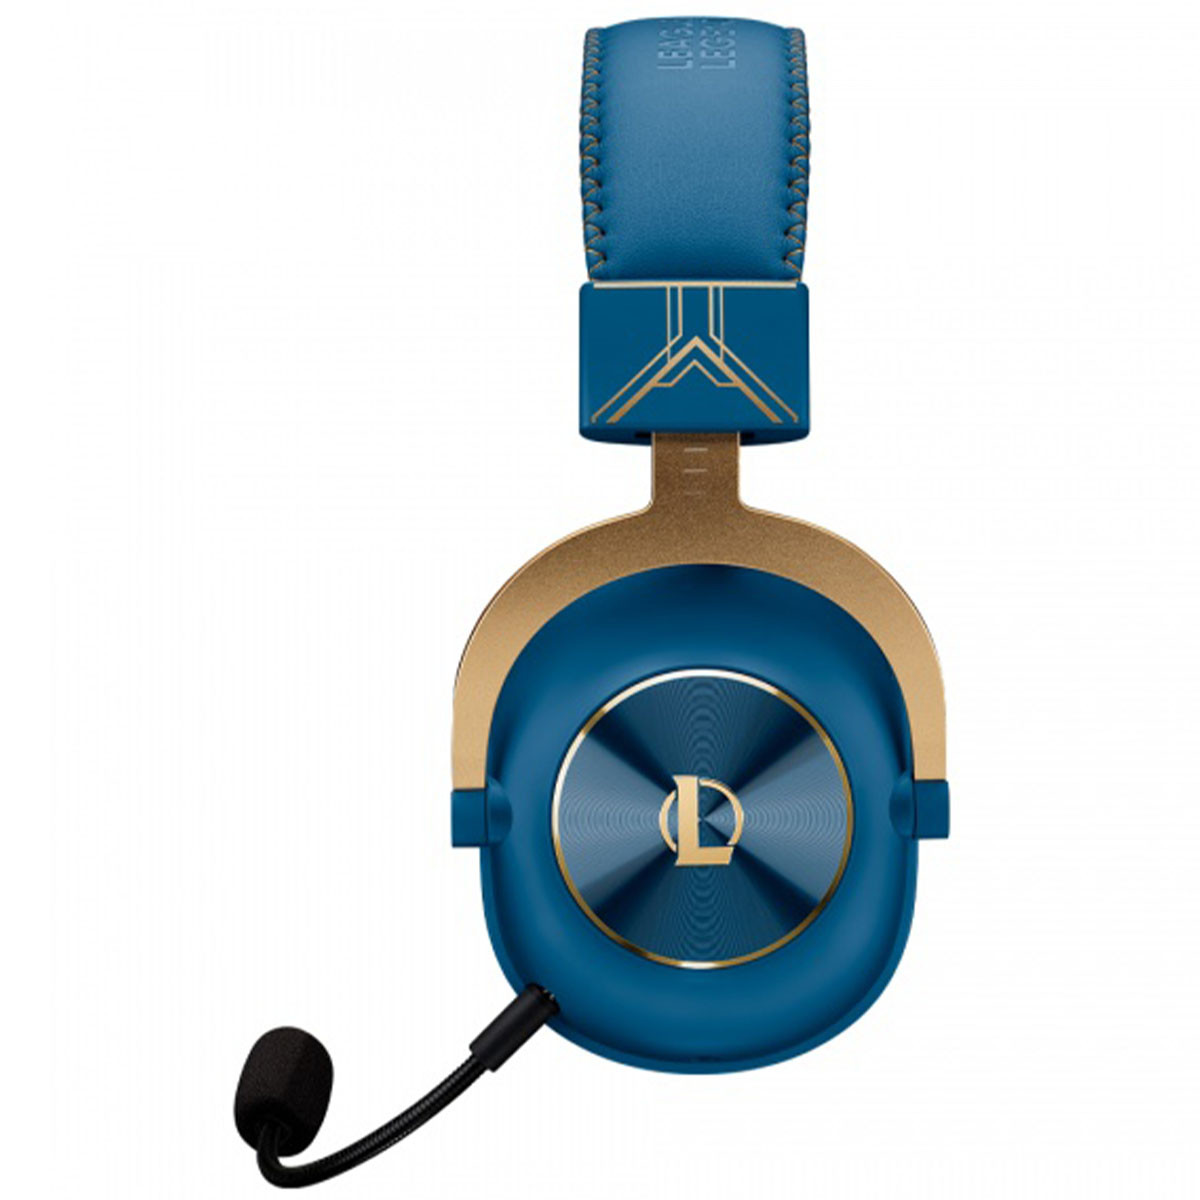 Auricular Gamer Logitech G Pro X 7.1 Blue Voice DTS 2.0 Con Microfono  Perfiles de Ecualizacion Para